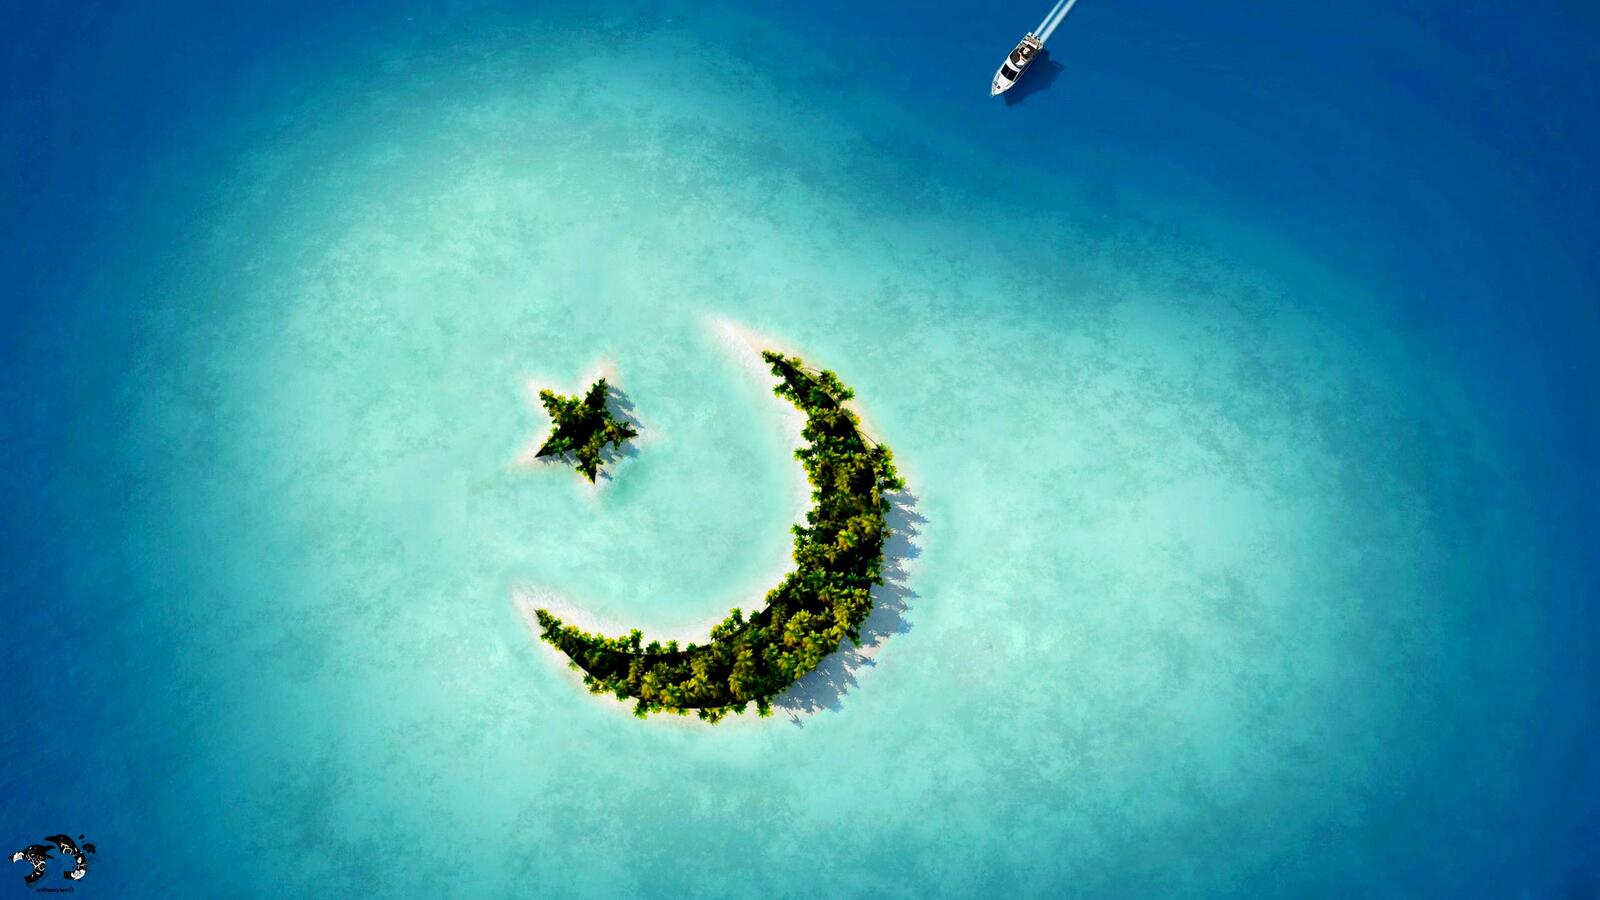 免费照片壁纸描绘了深海中的一座岛屿，其形状为带星星的新月